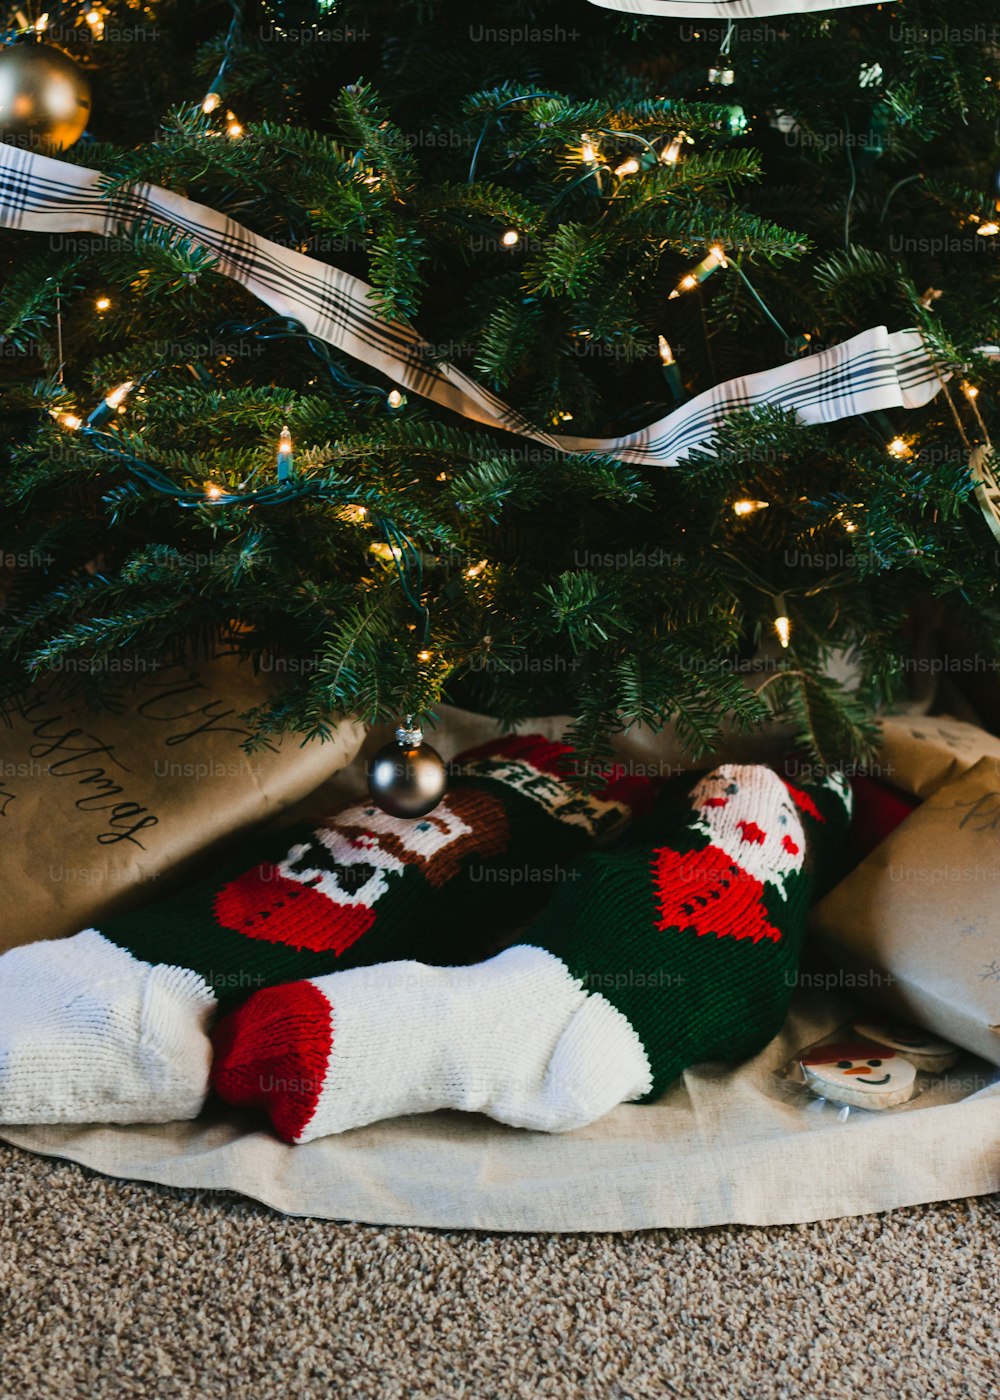 ein Weihnachtsbaum mit Geschenken darunter und ein Teddybär unter dem Baum